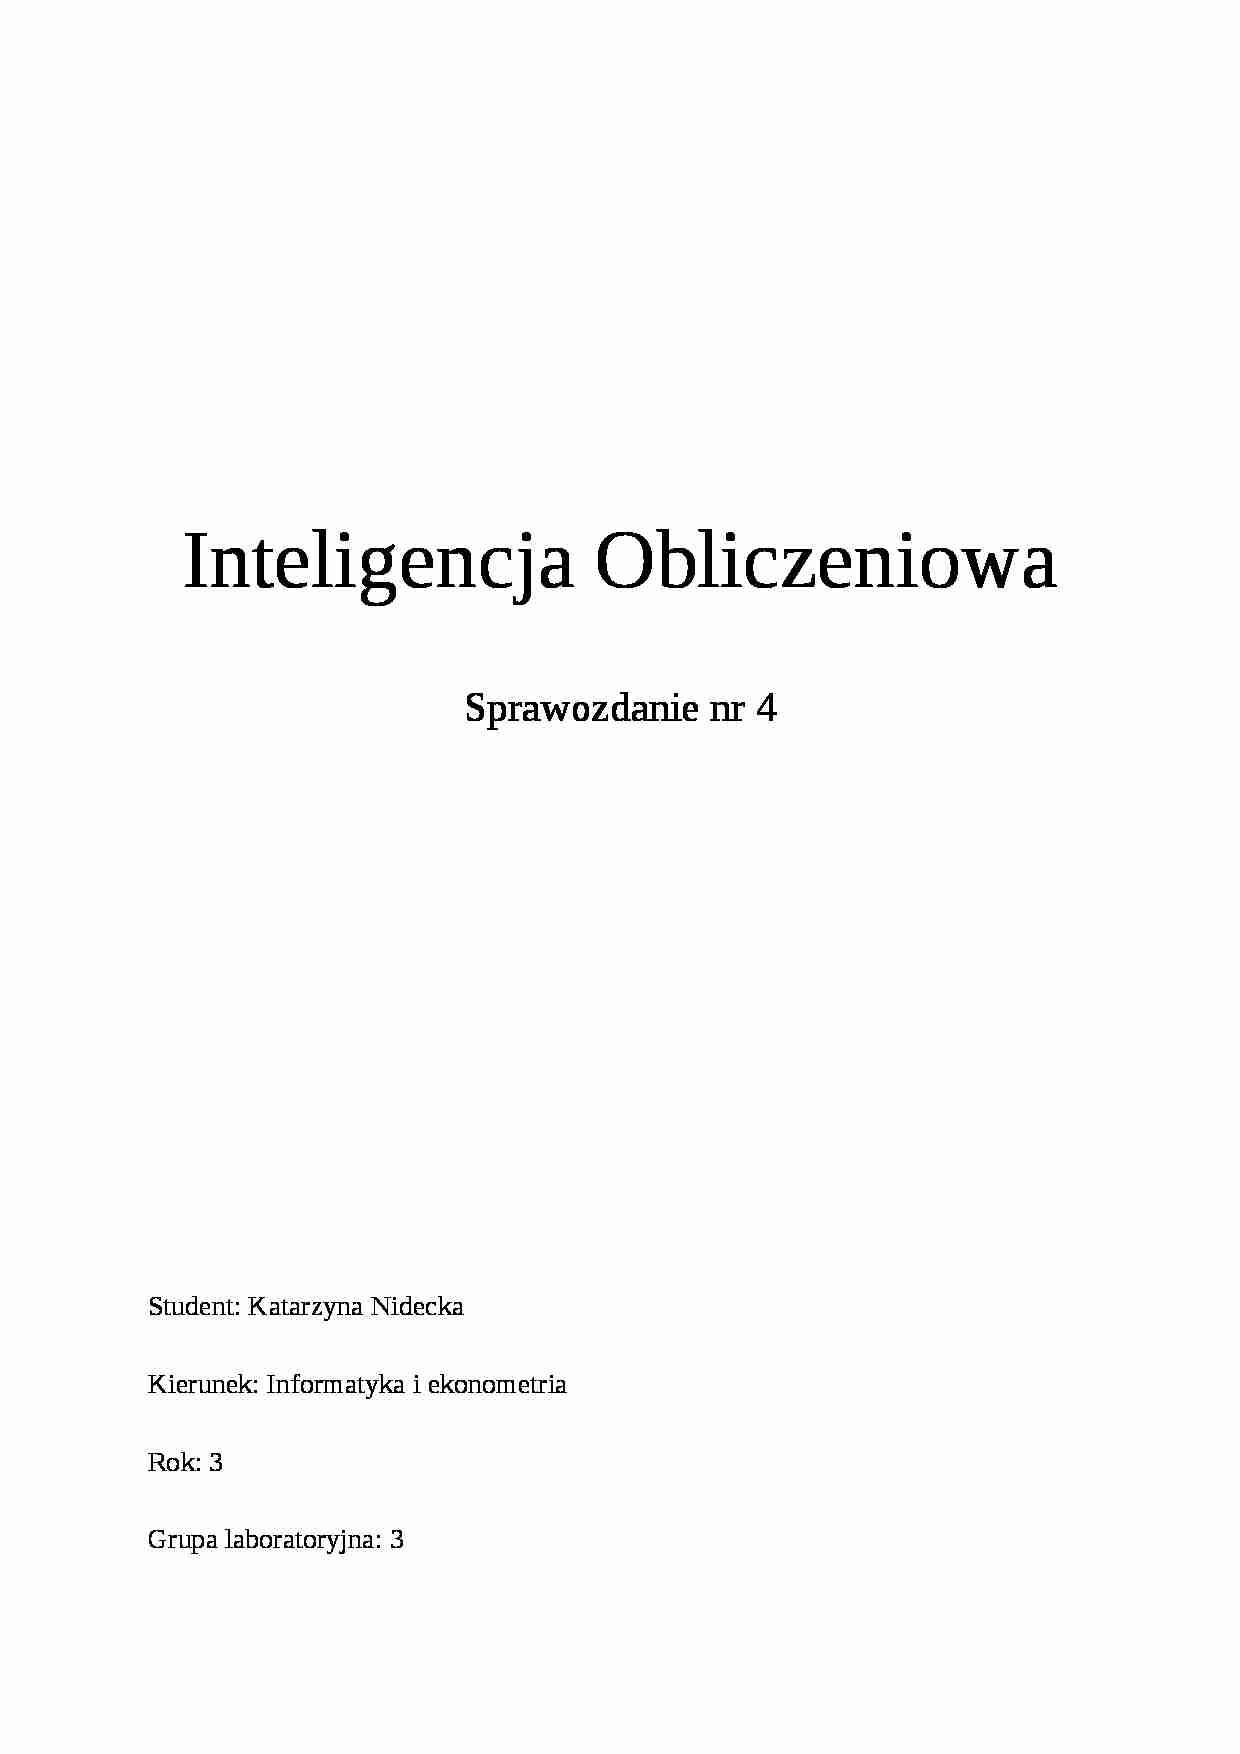 Inteligencja Obliczeniowa-Sprawozdanie nr 4 - strona 1